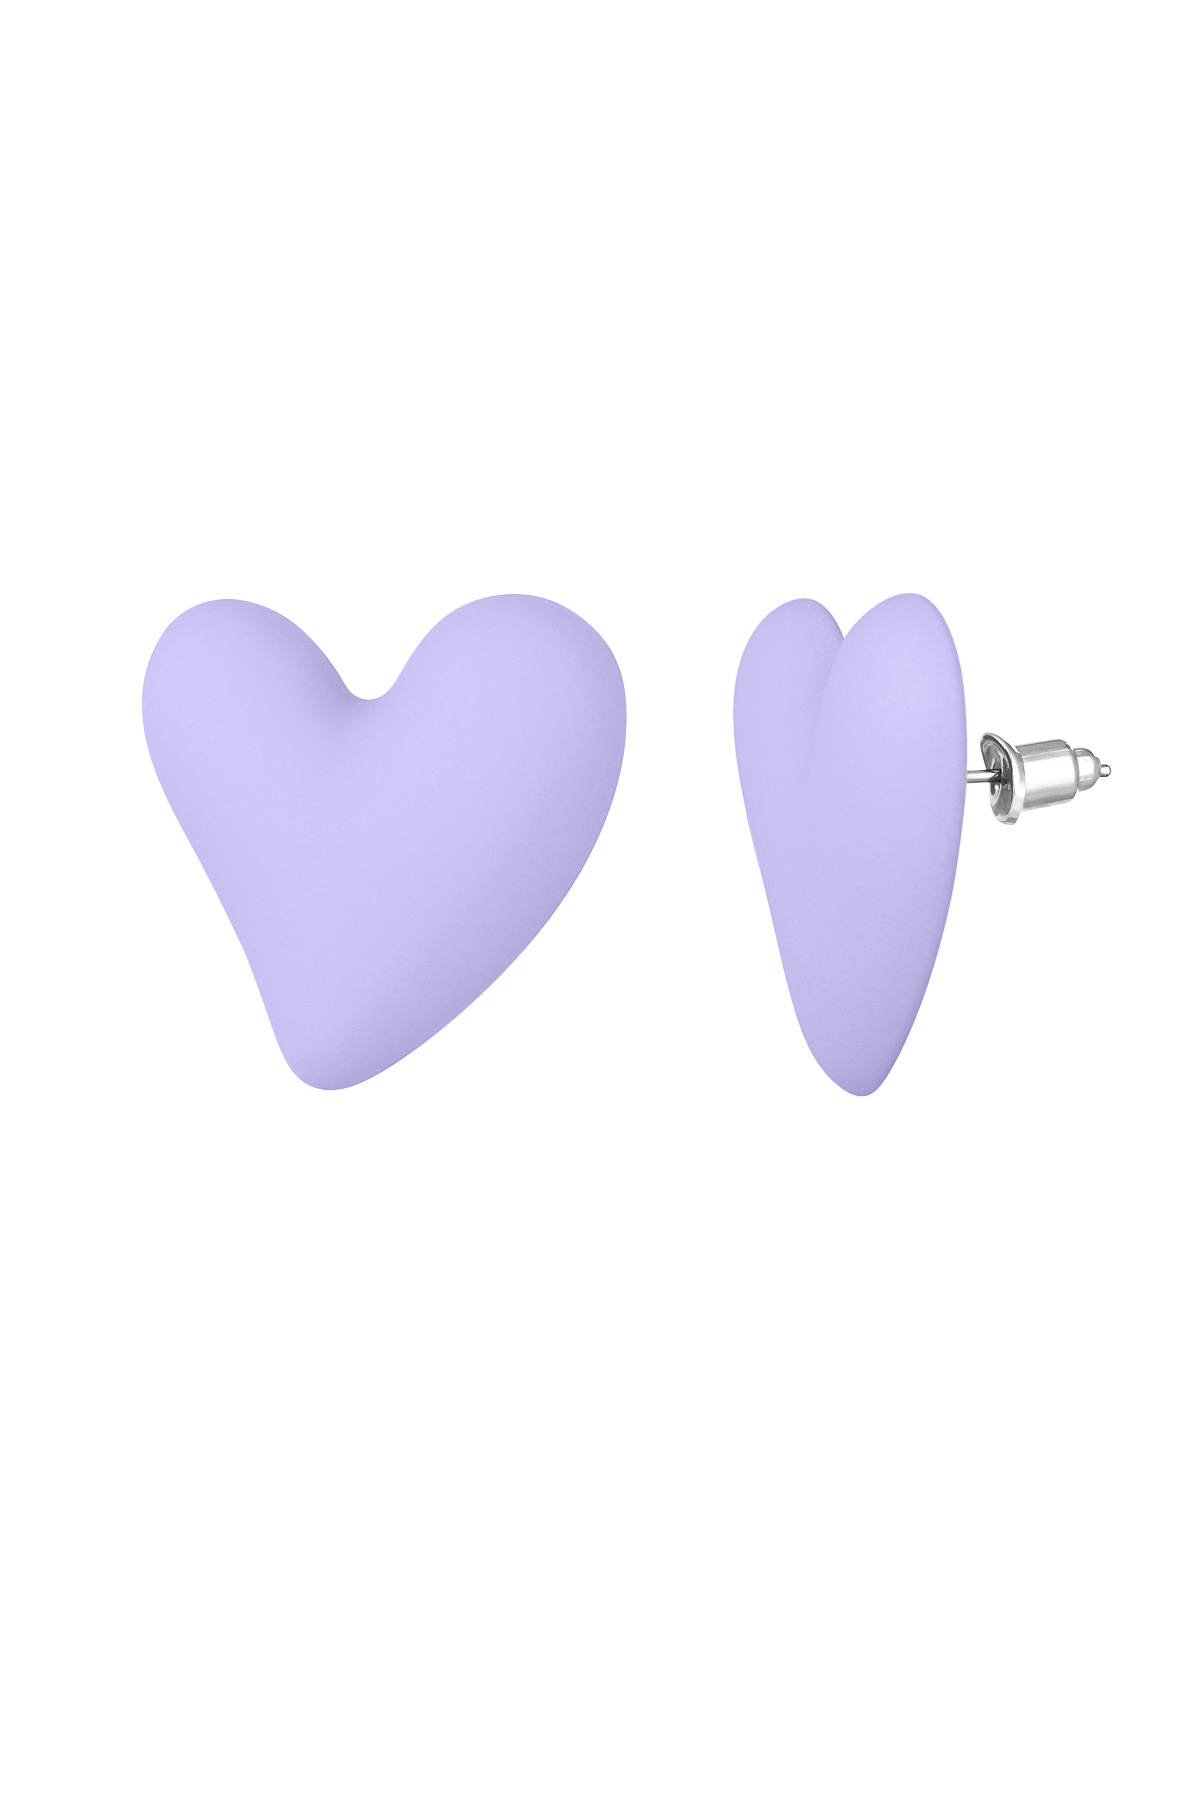 Boucles d'oreilles love colorées - lilas 